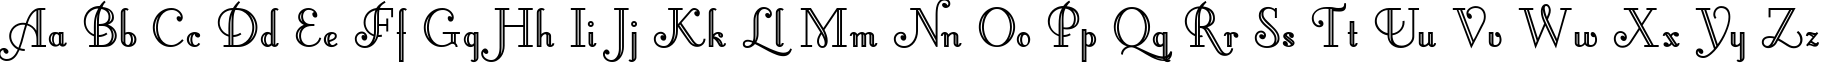 Пример написания английского алфавита шрифтом Artemis Deco